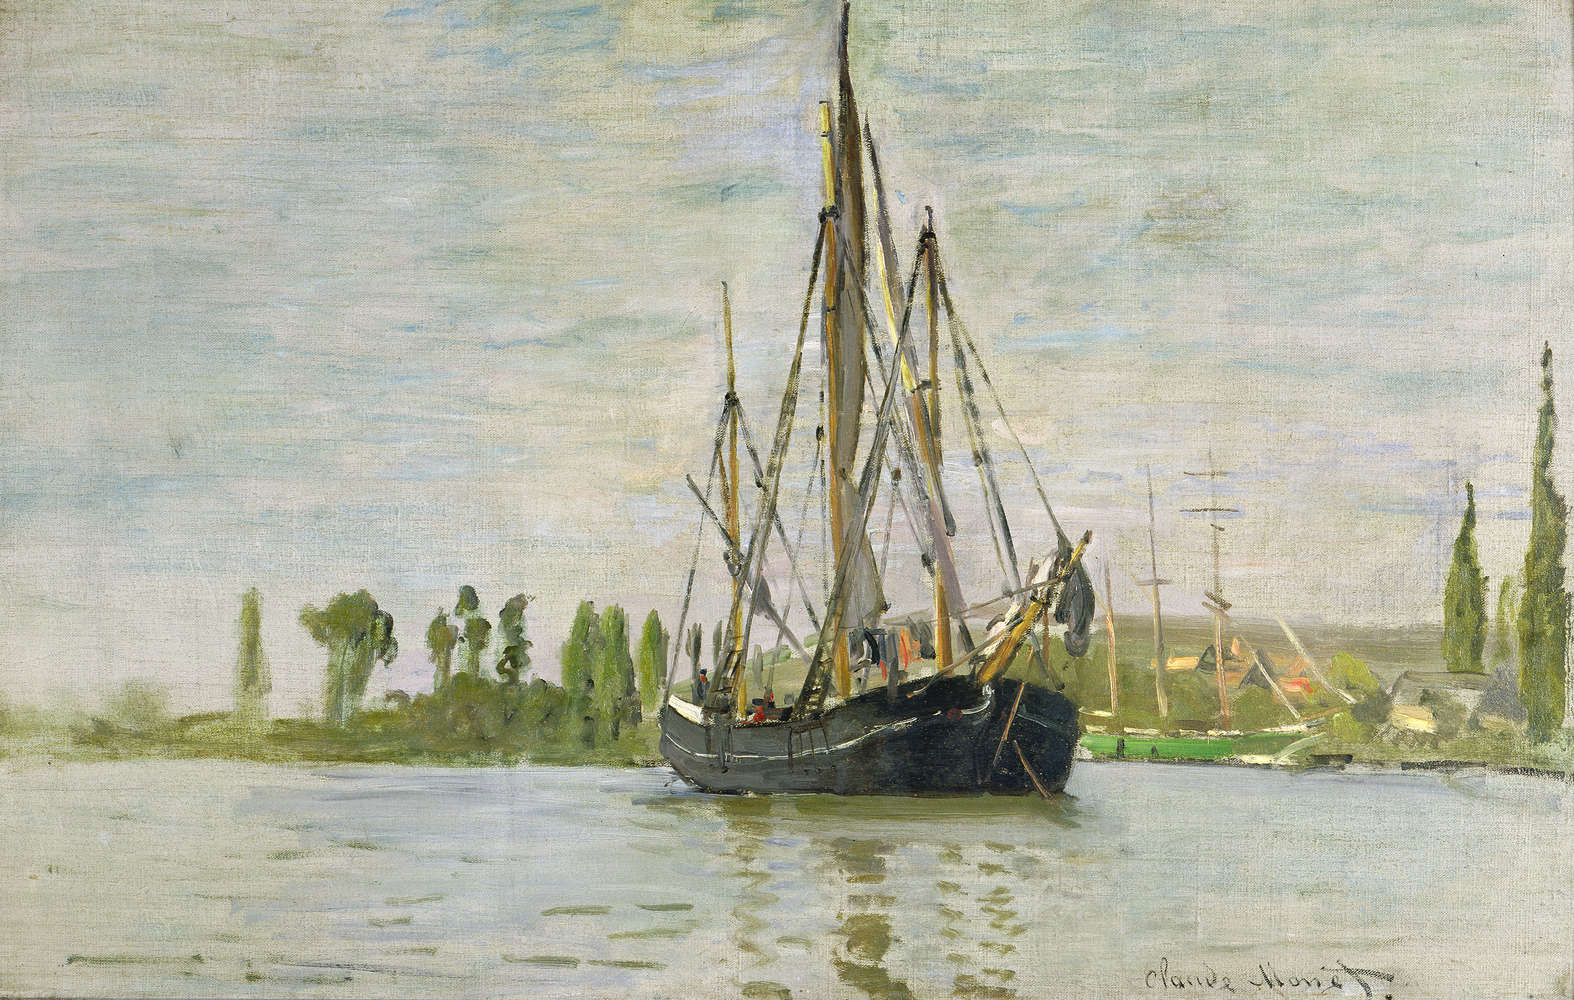             Muurschildering "De Chasse-Marée voor anker" van Claude Monet
        